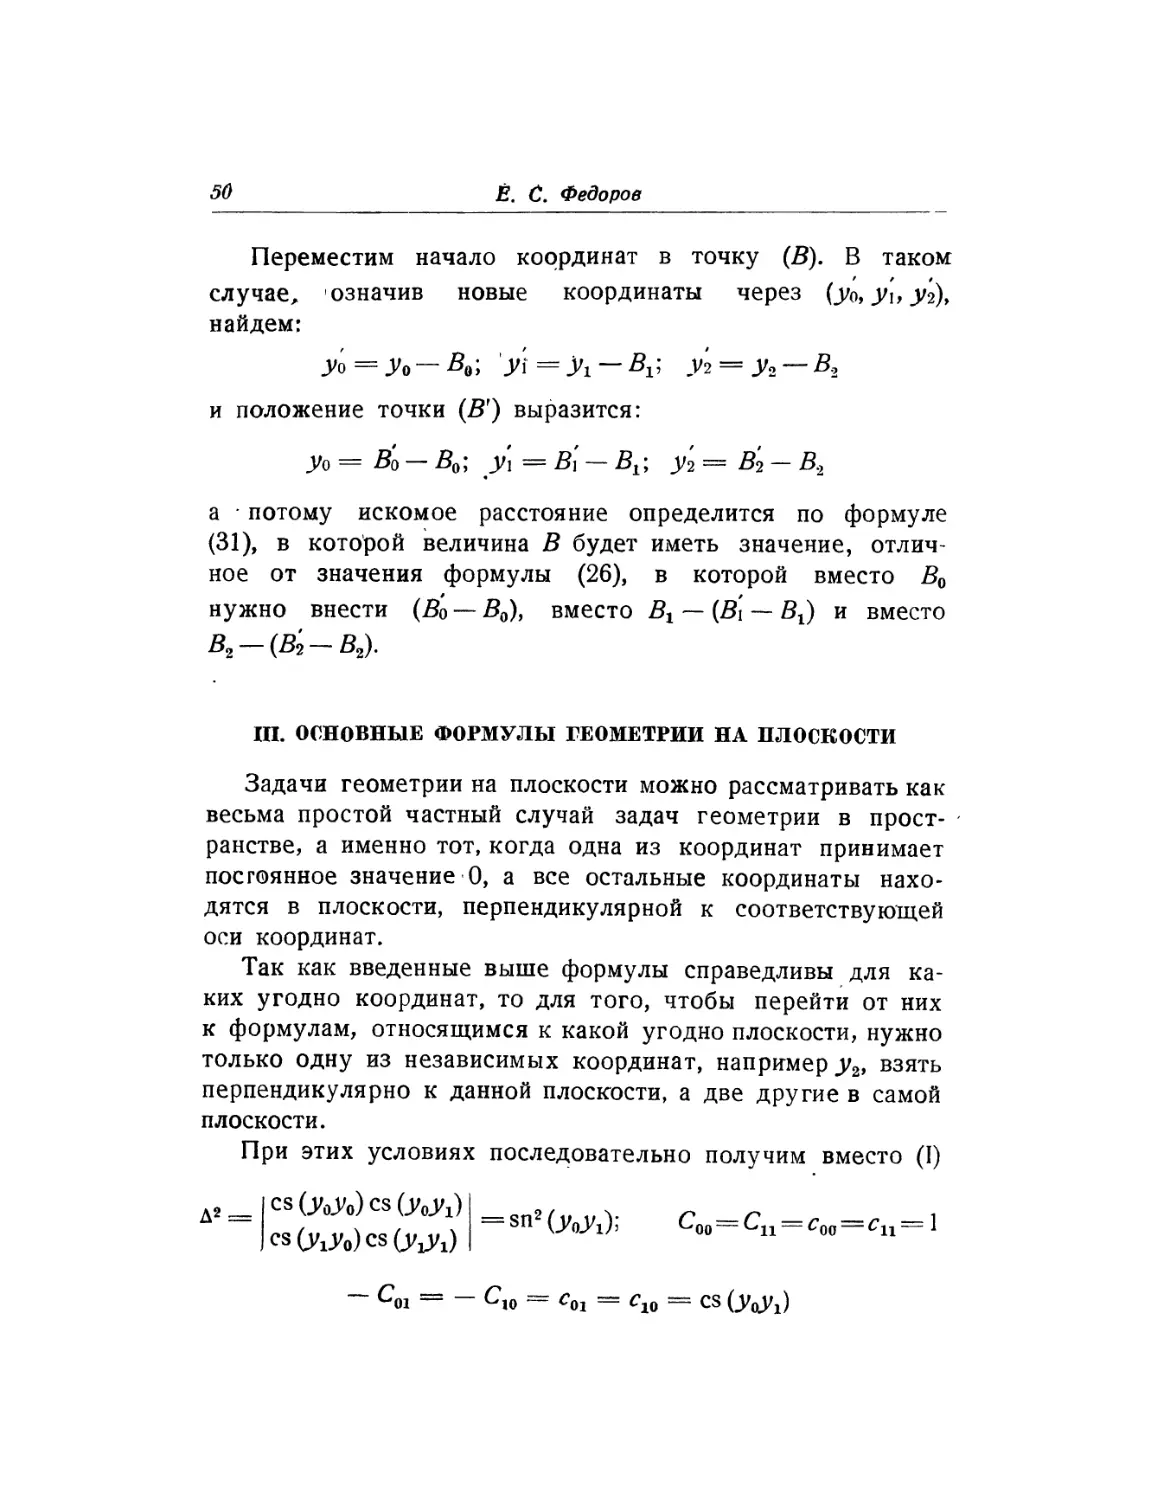 III. Основные формулы геометрии на плоскости